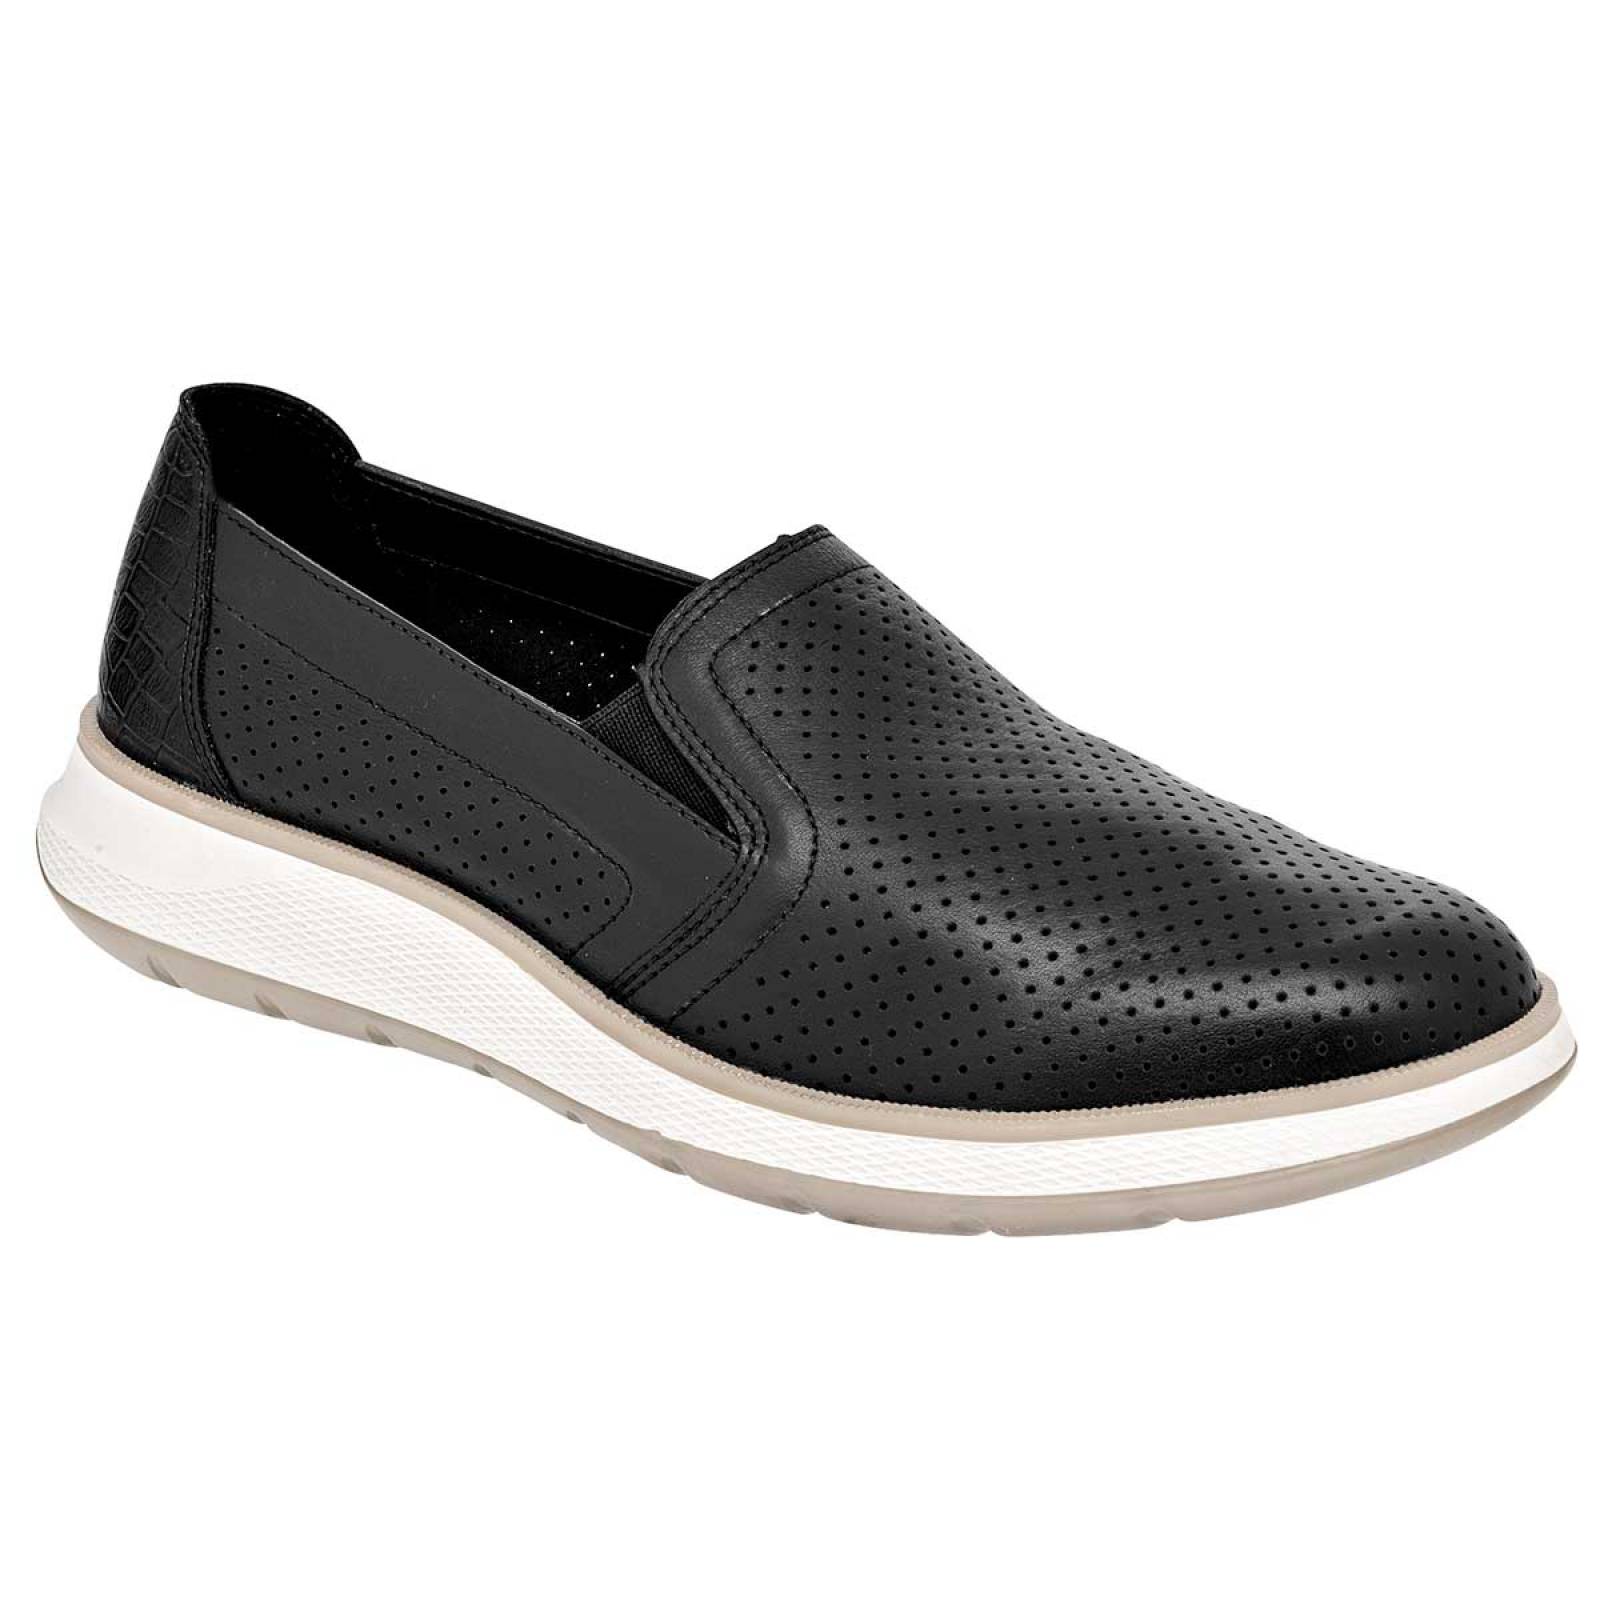 Zapatos Negros modelo Casual para Mujer ✓ Tienda de Zapatos Online